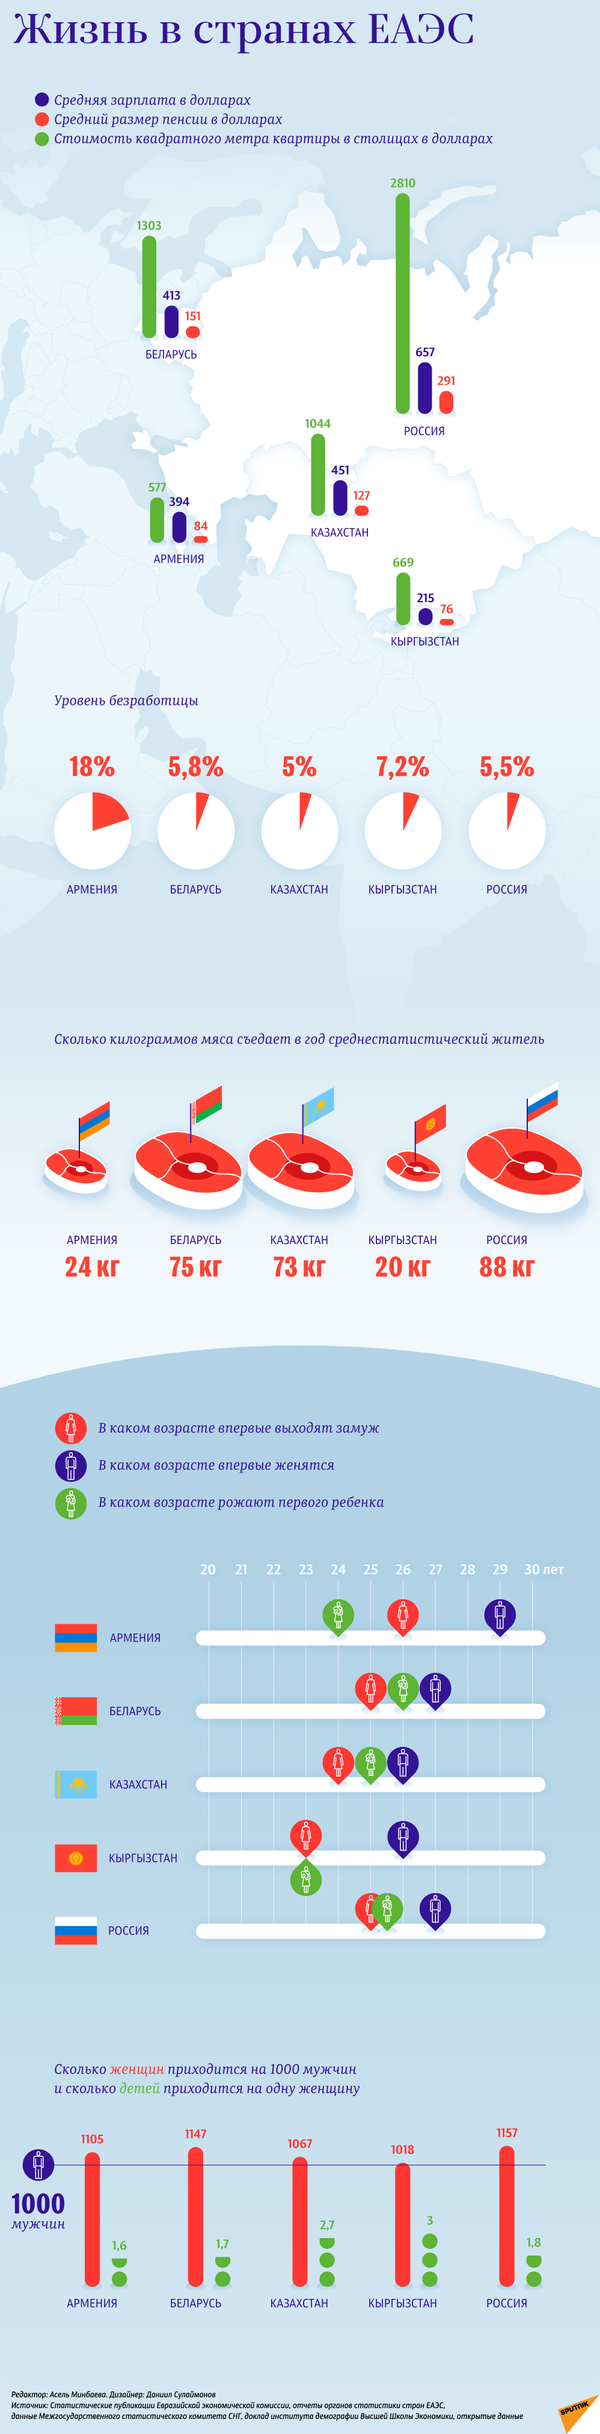 Уровень жизни в странах ЕАЭС – инфографика на sputnik.by - Sputnik Беларусь